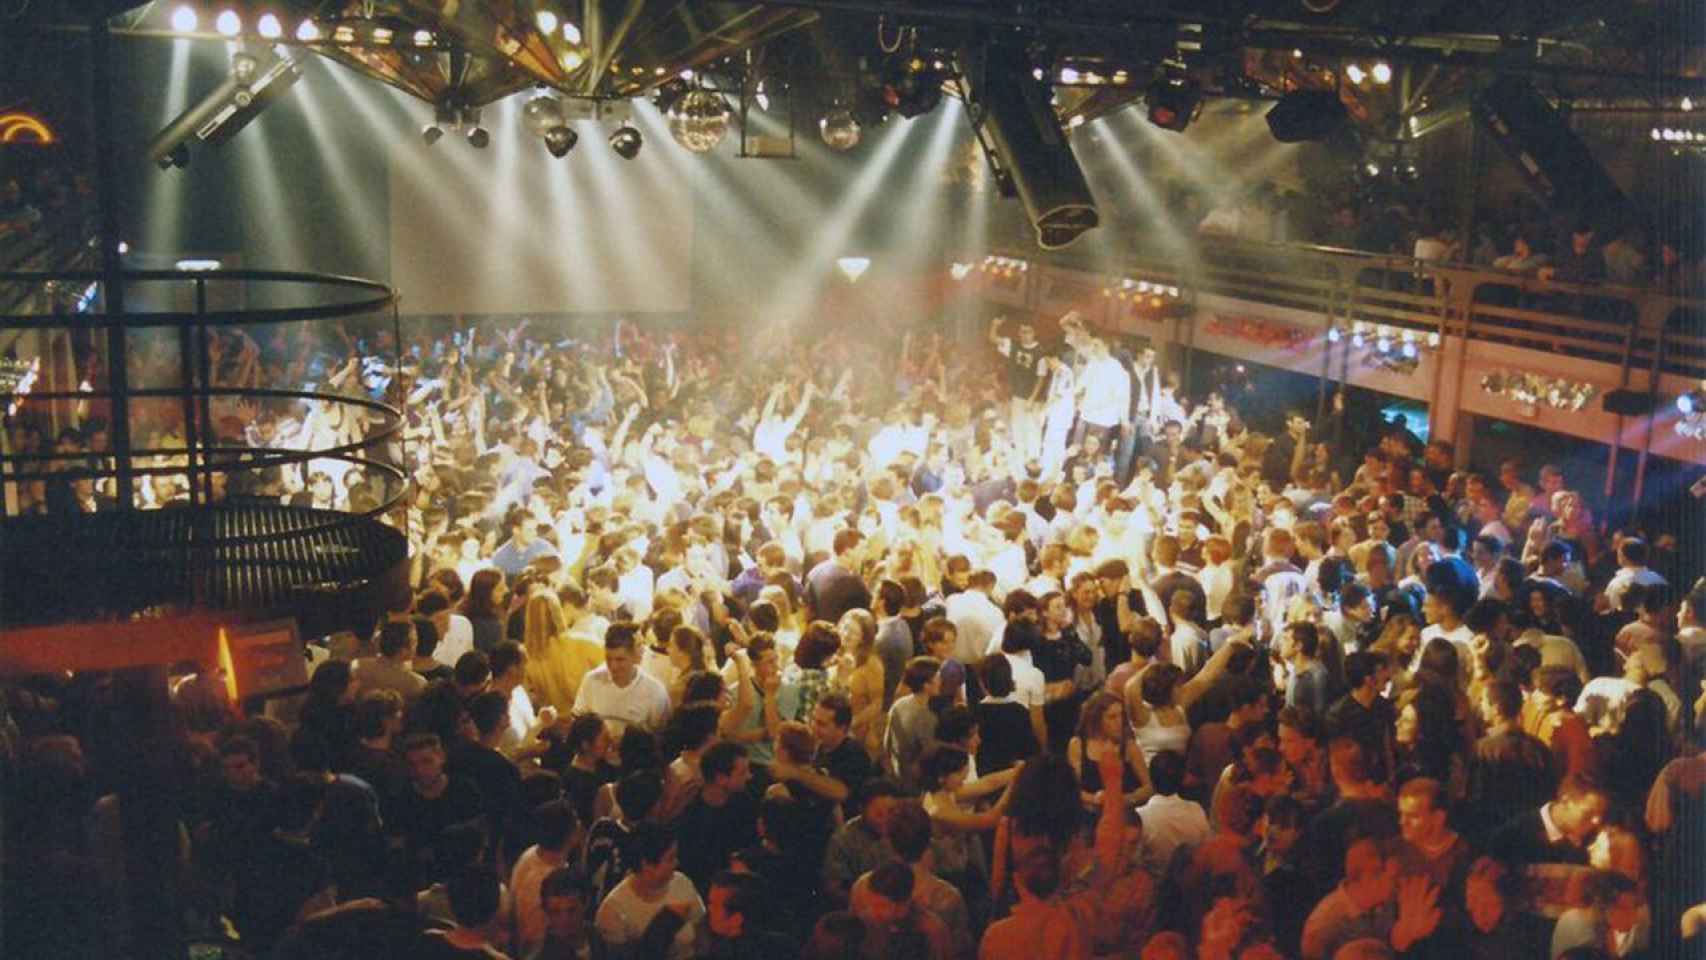 Interior de una discoteca en una imagen de archivo